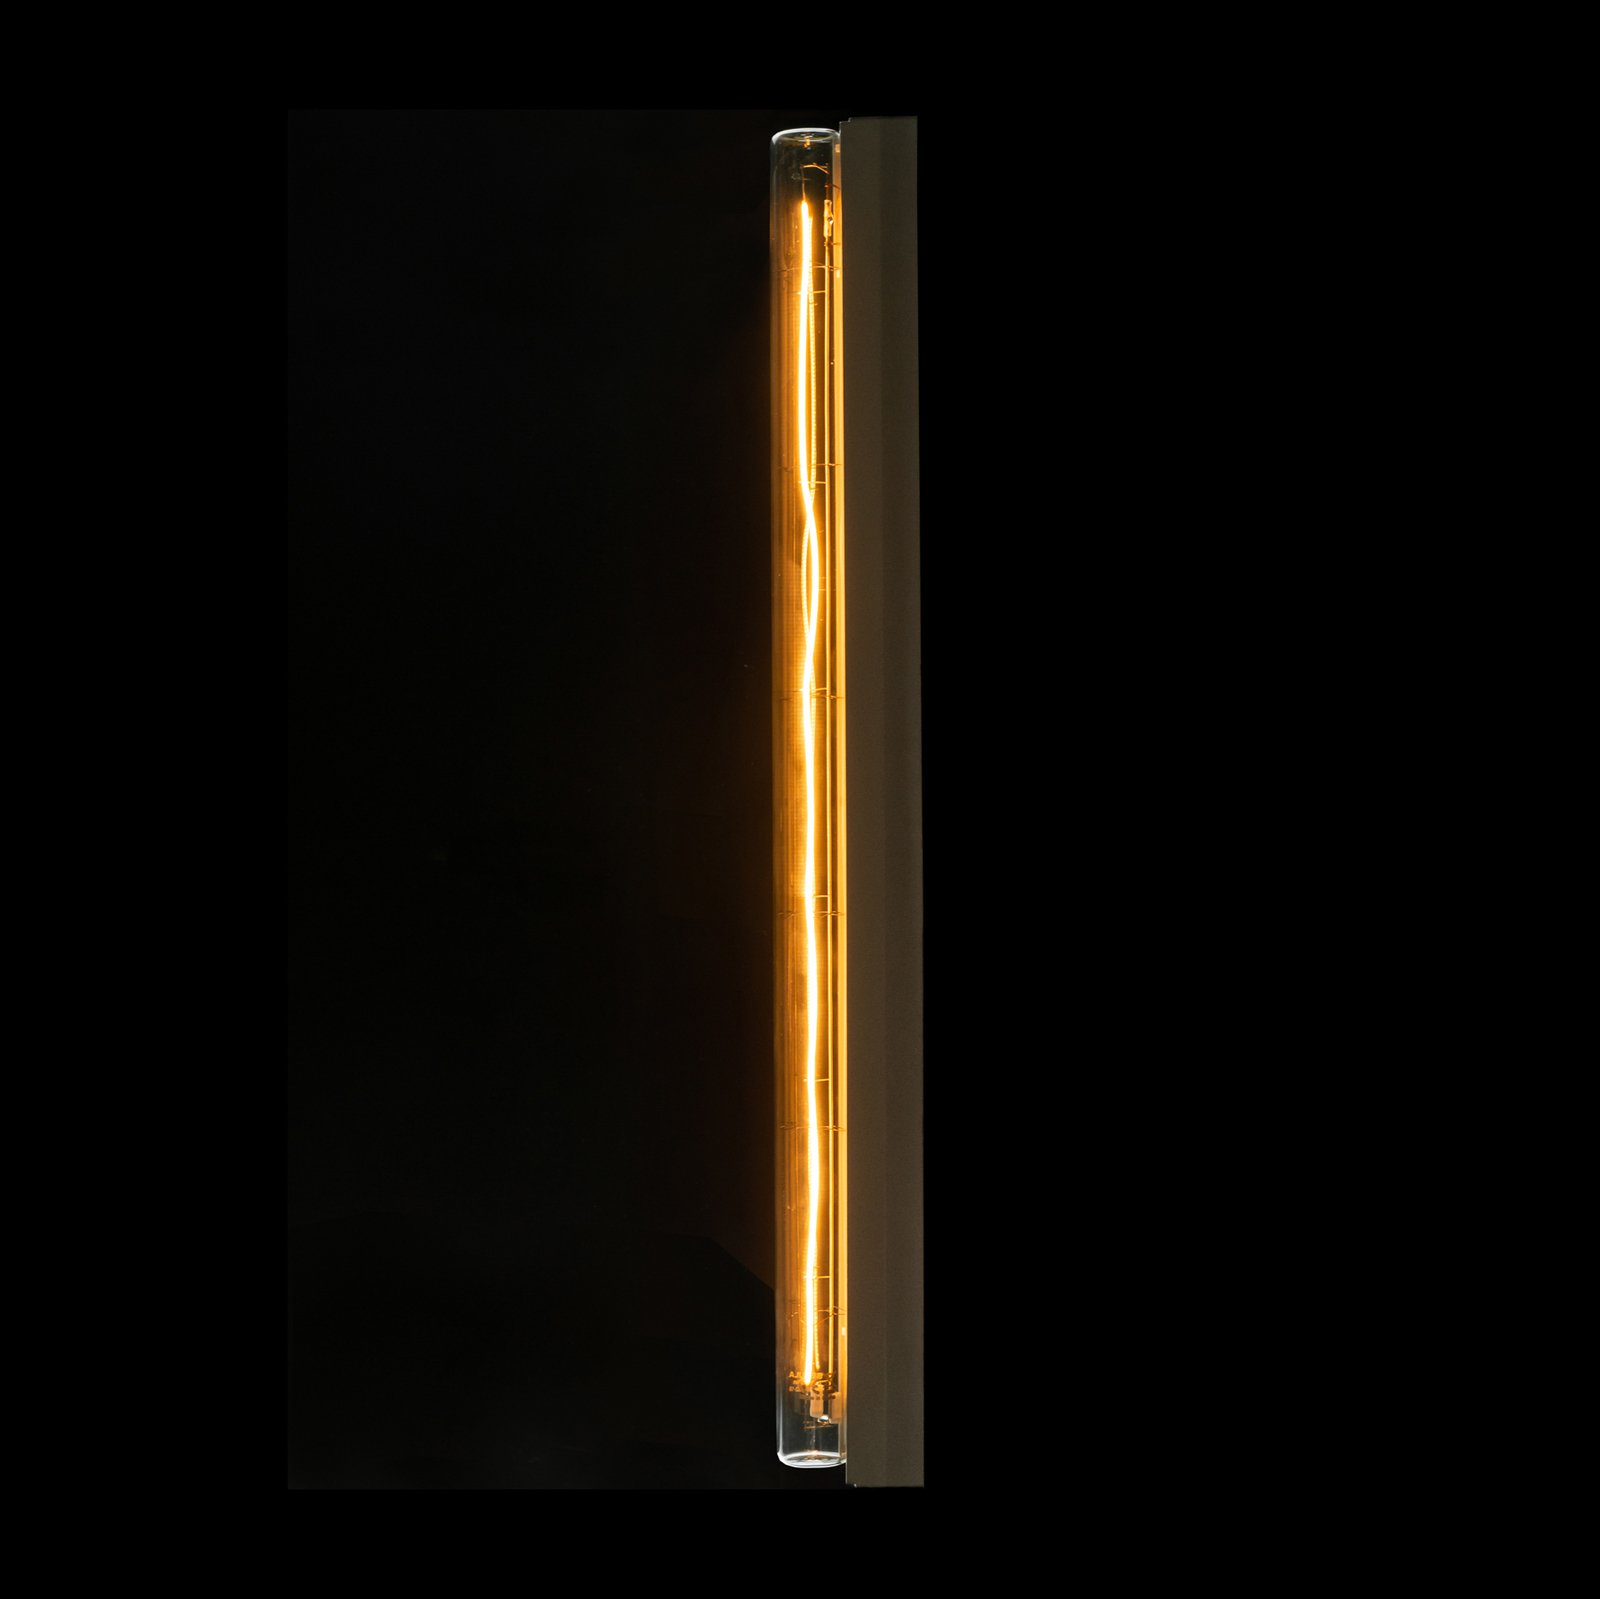 SEGULA LED linéaire S14s 5W 50cm 2 200K claire